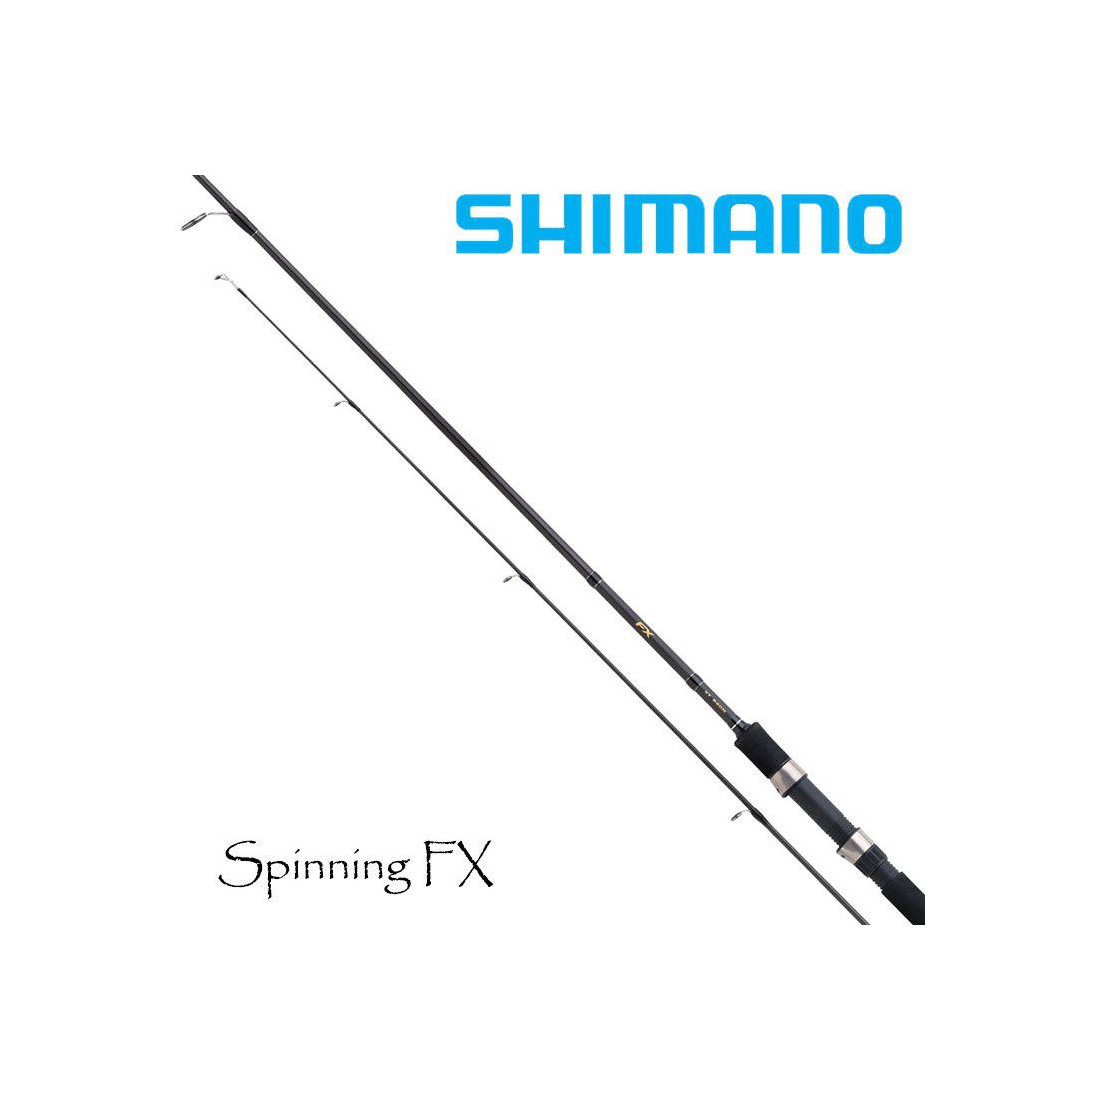 Spinning reel Shimano FX